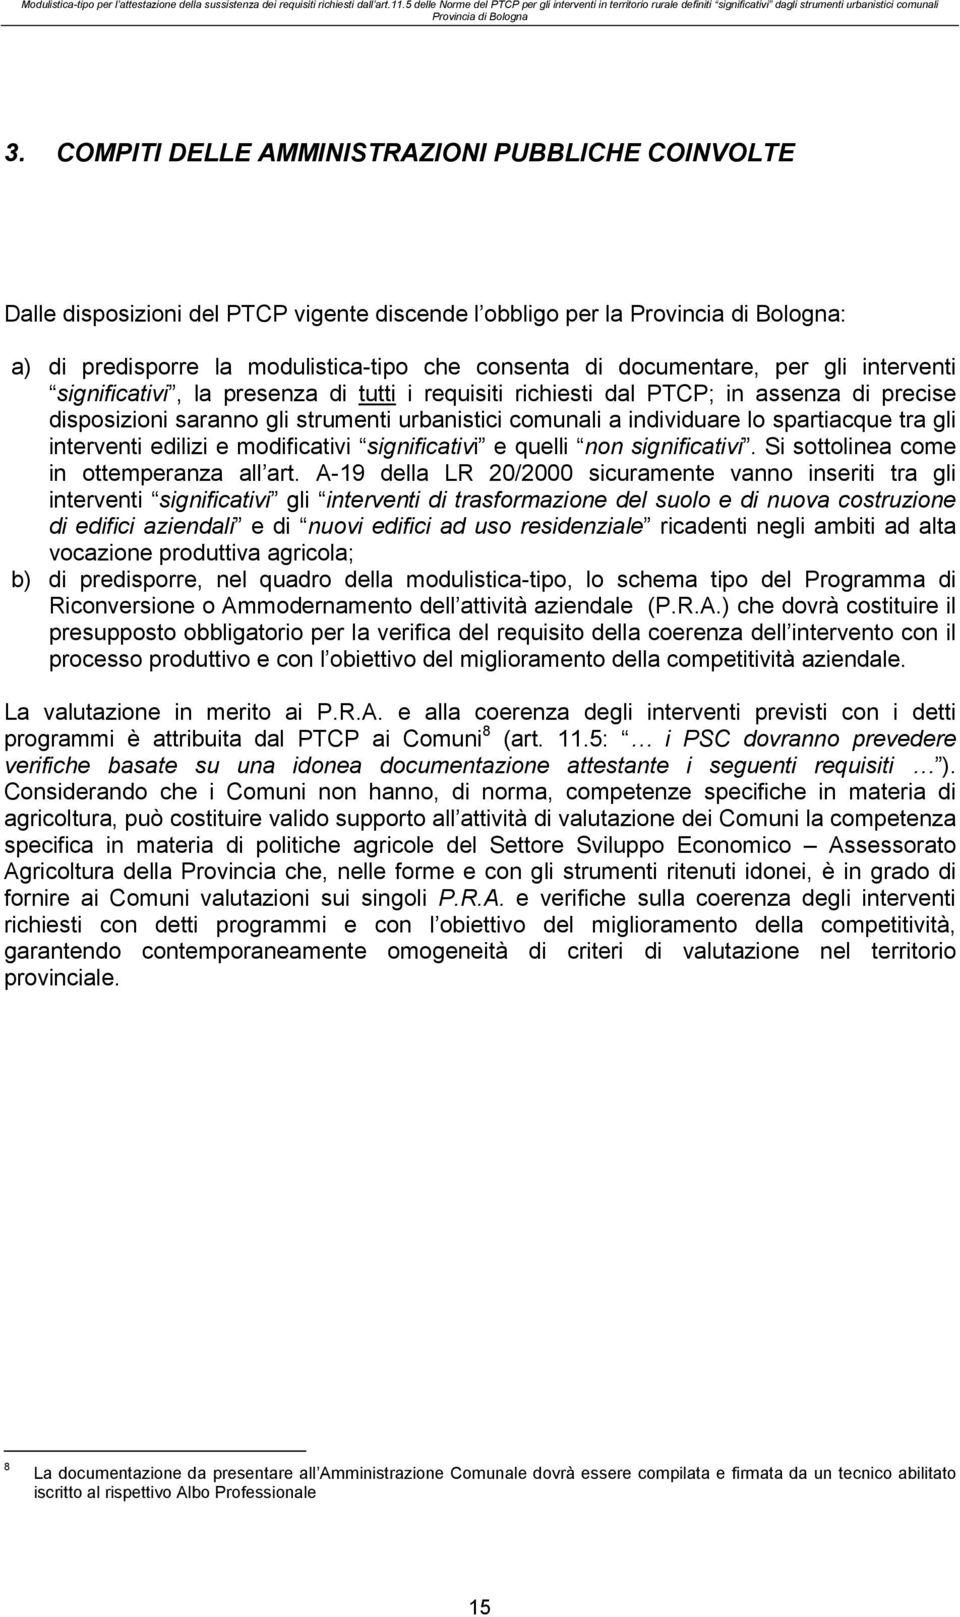 COMPITI DELLE AMMINISTRAZIONI PUBBLICHE COINVOLTE Dalle disposizioni del PTCP vigente discende l obbligo per la Provincia di Bologna: a) di predisporre la modulistica-tipo che consenta di